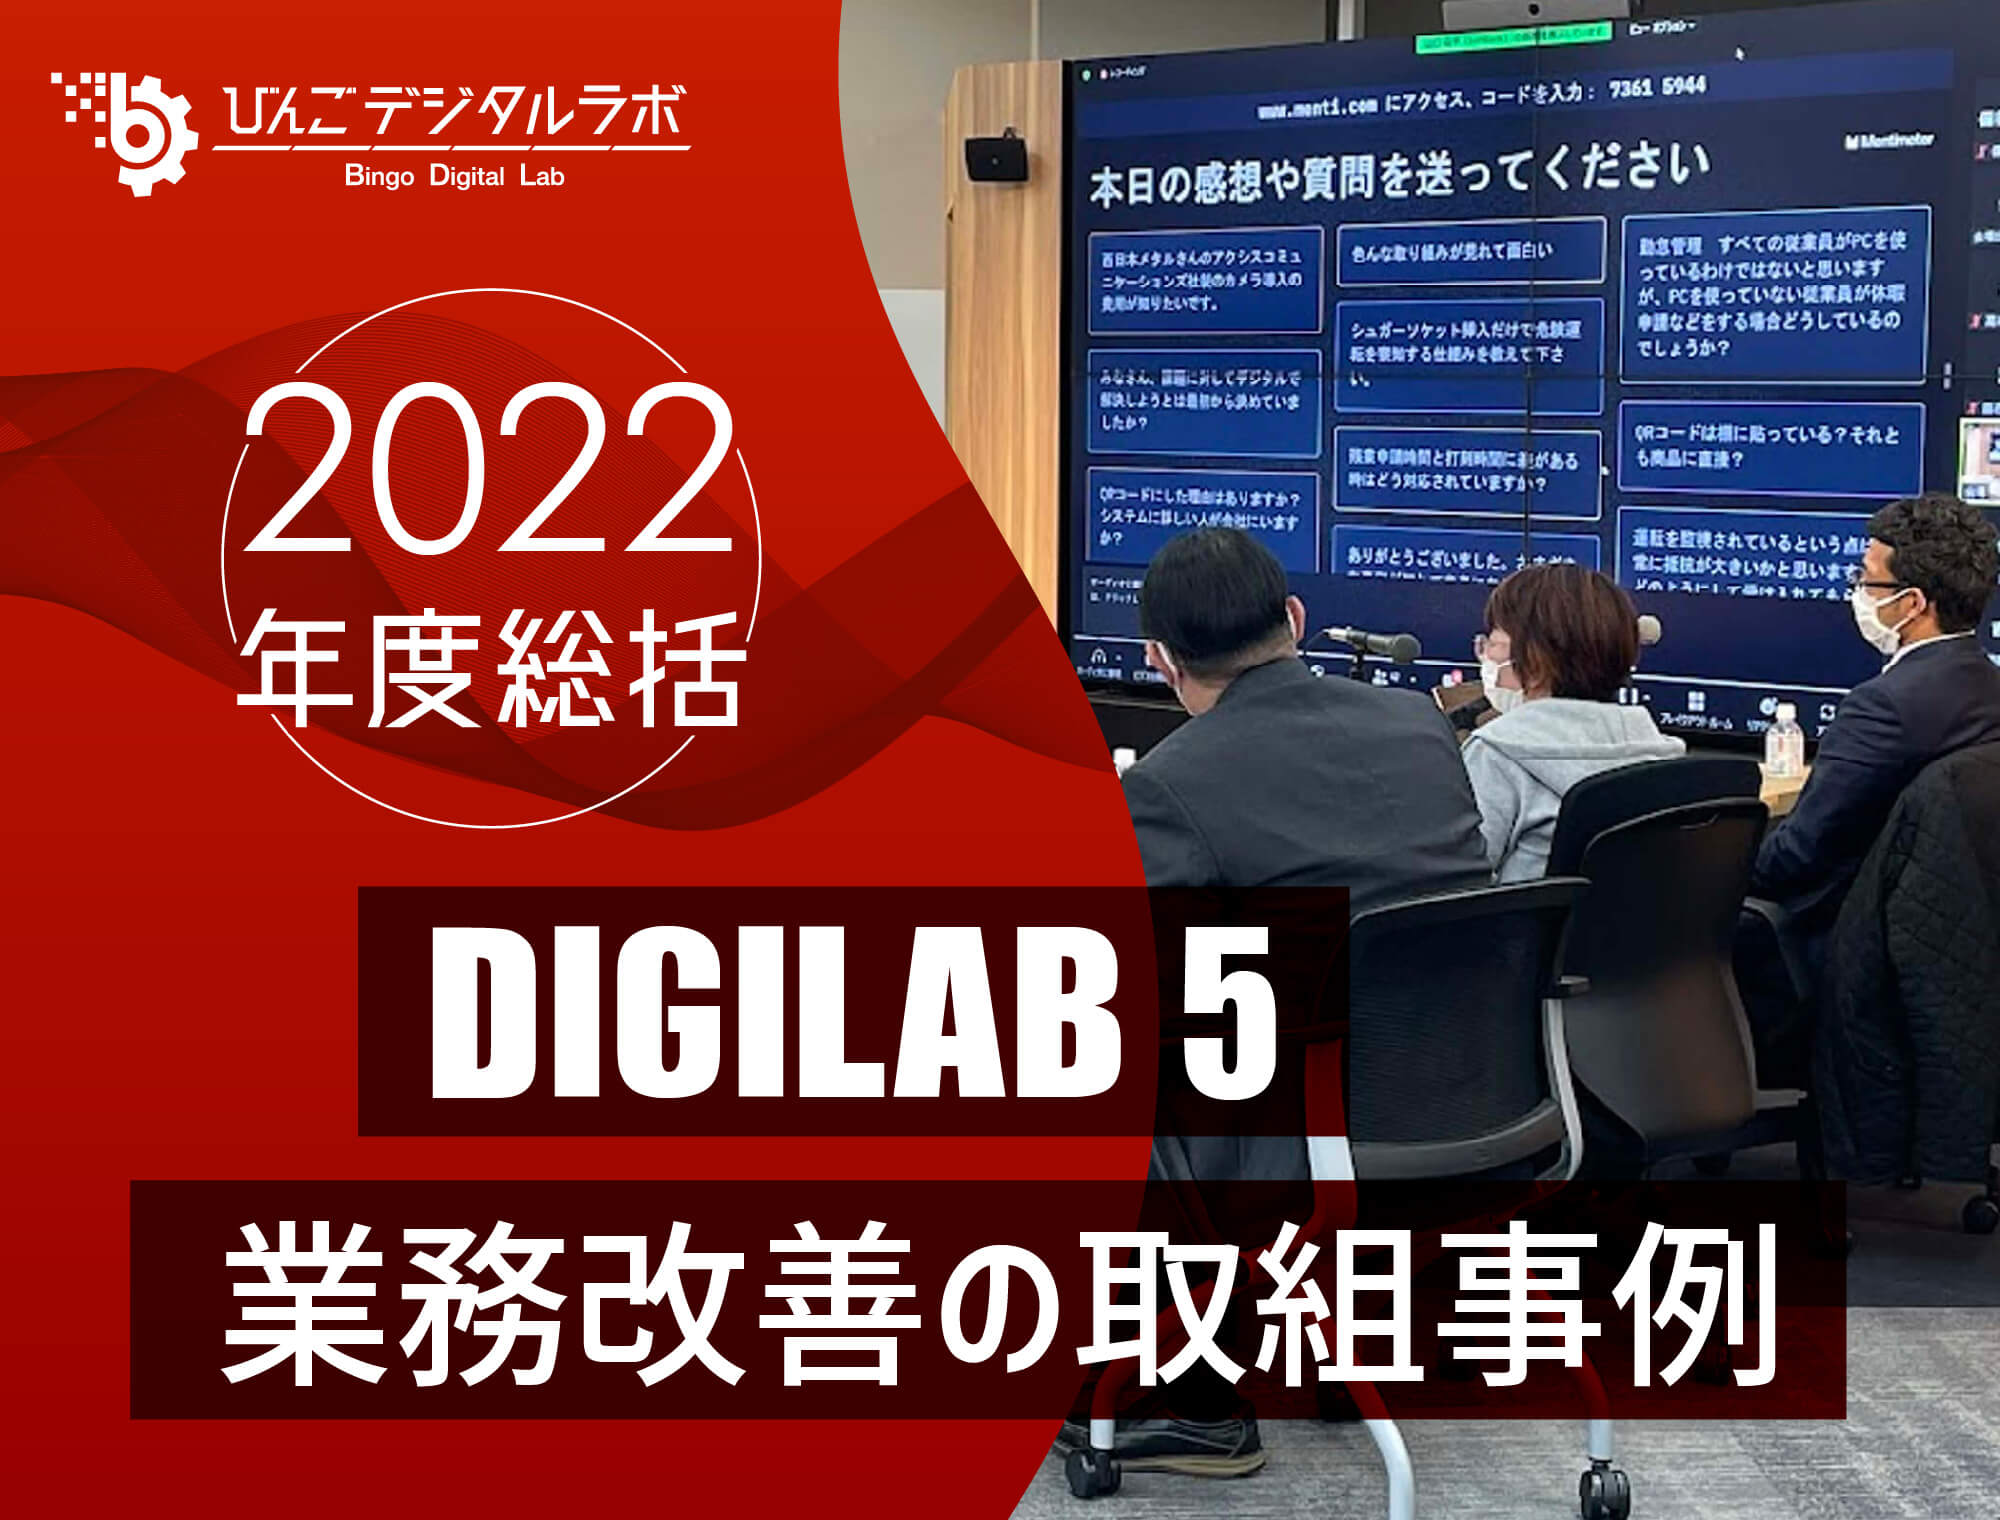 【2022年度総括】2022年度 第5回びんごデジタルラボイベント『DIGILAB5』を実施しました ～「業務改善の取組事例」～